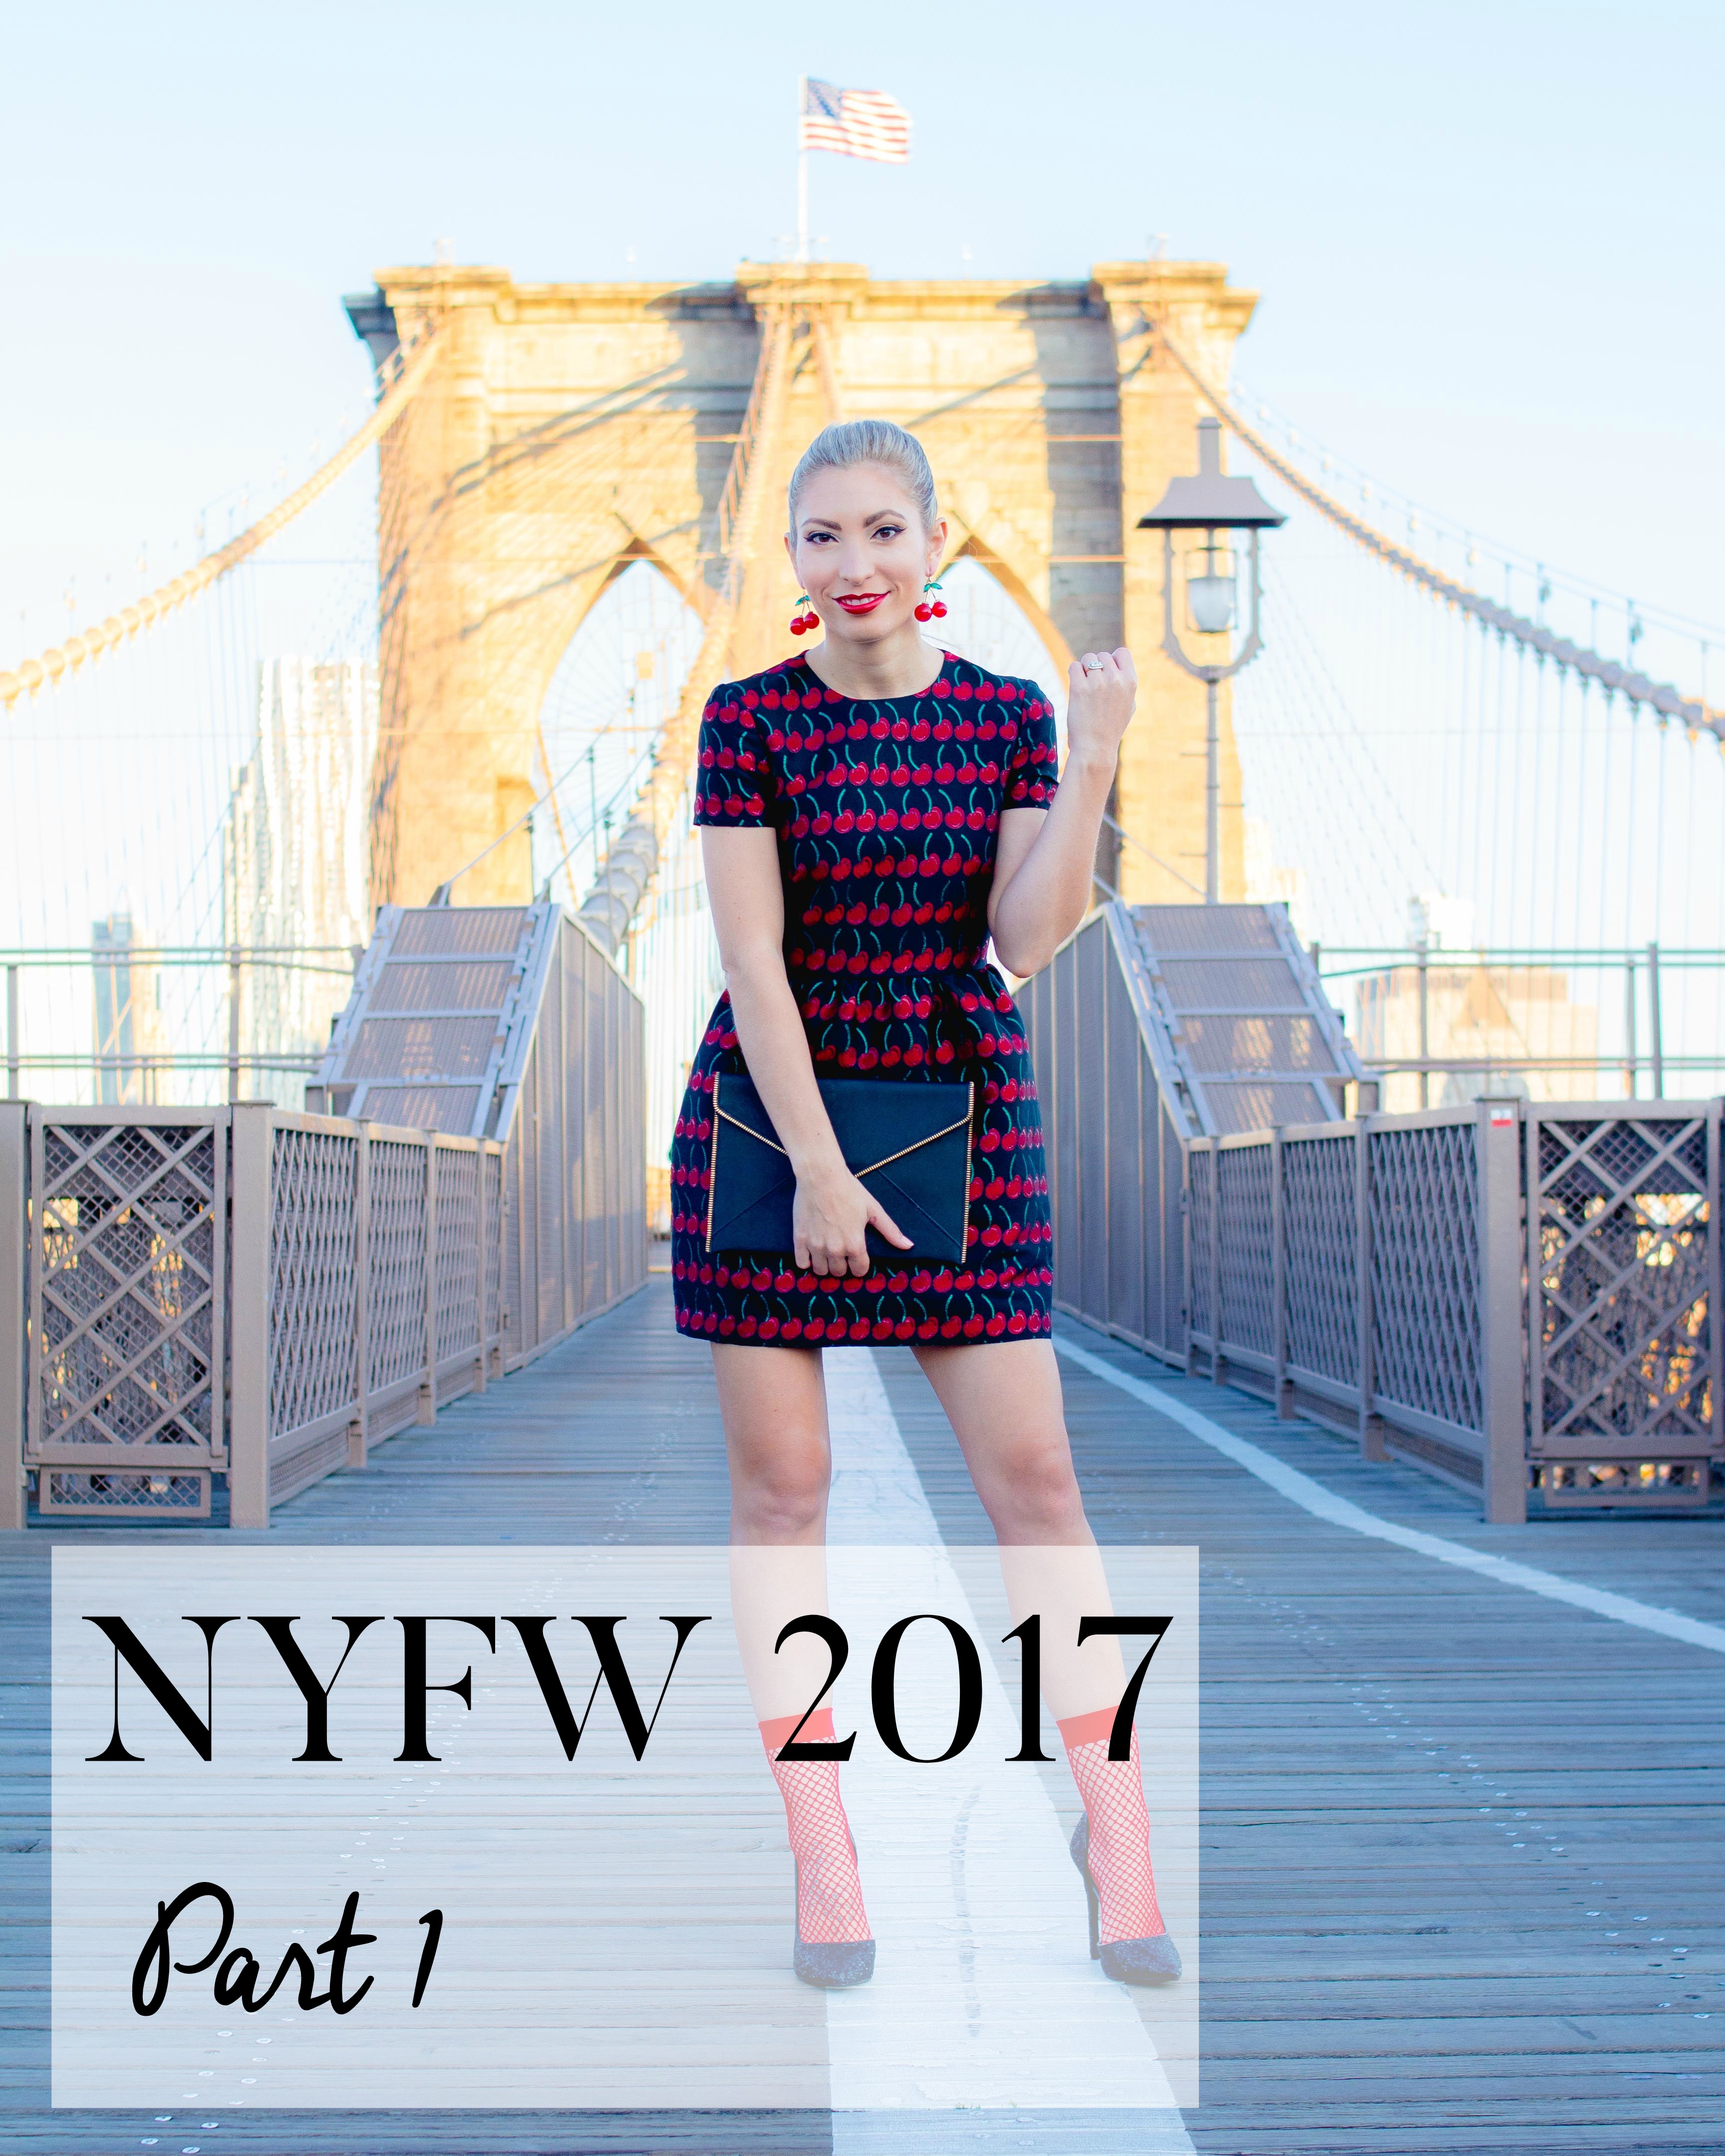 NYFW 2017 - PART 1